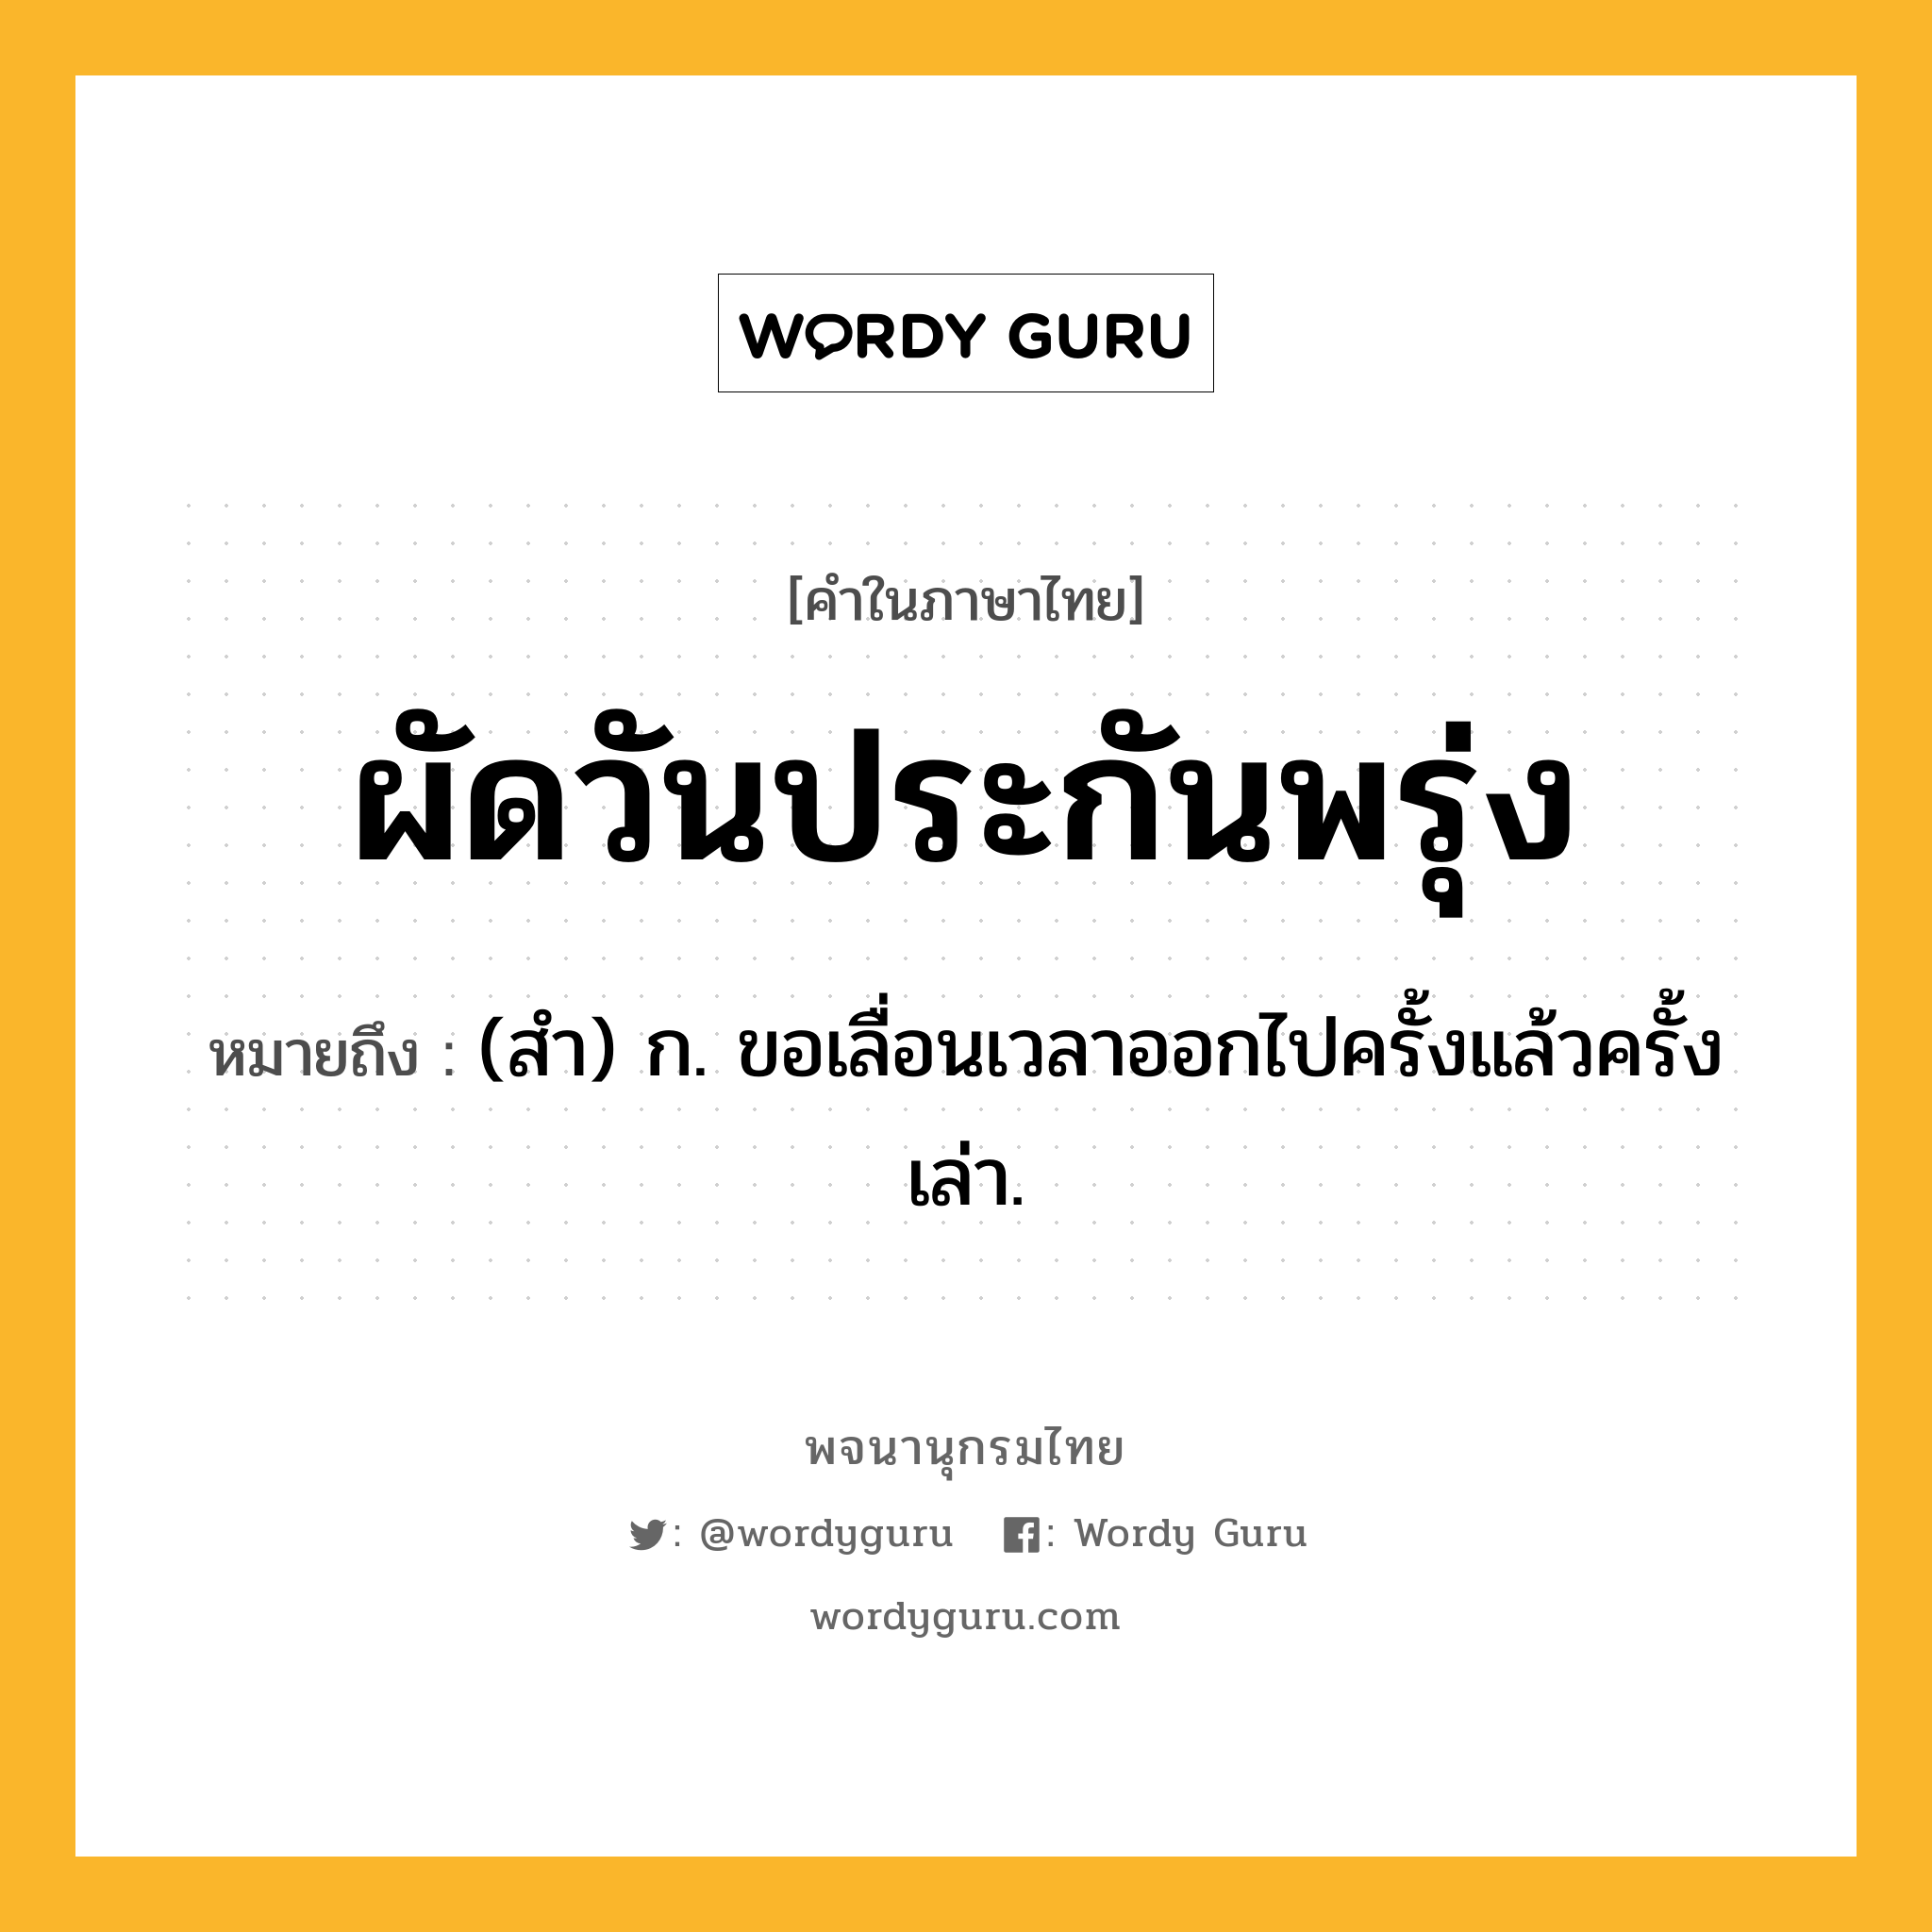 ผัดวันประกันพรุ่ง ความหมาย หมายถึงอะไร?, คำในภาษาไทย ผัดวันประกันพรุ่ง หมายถึง (สํา) ก. ขอเลื่อนเวลาออกไปครั้งแล้วครั้งเล่า.